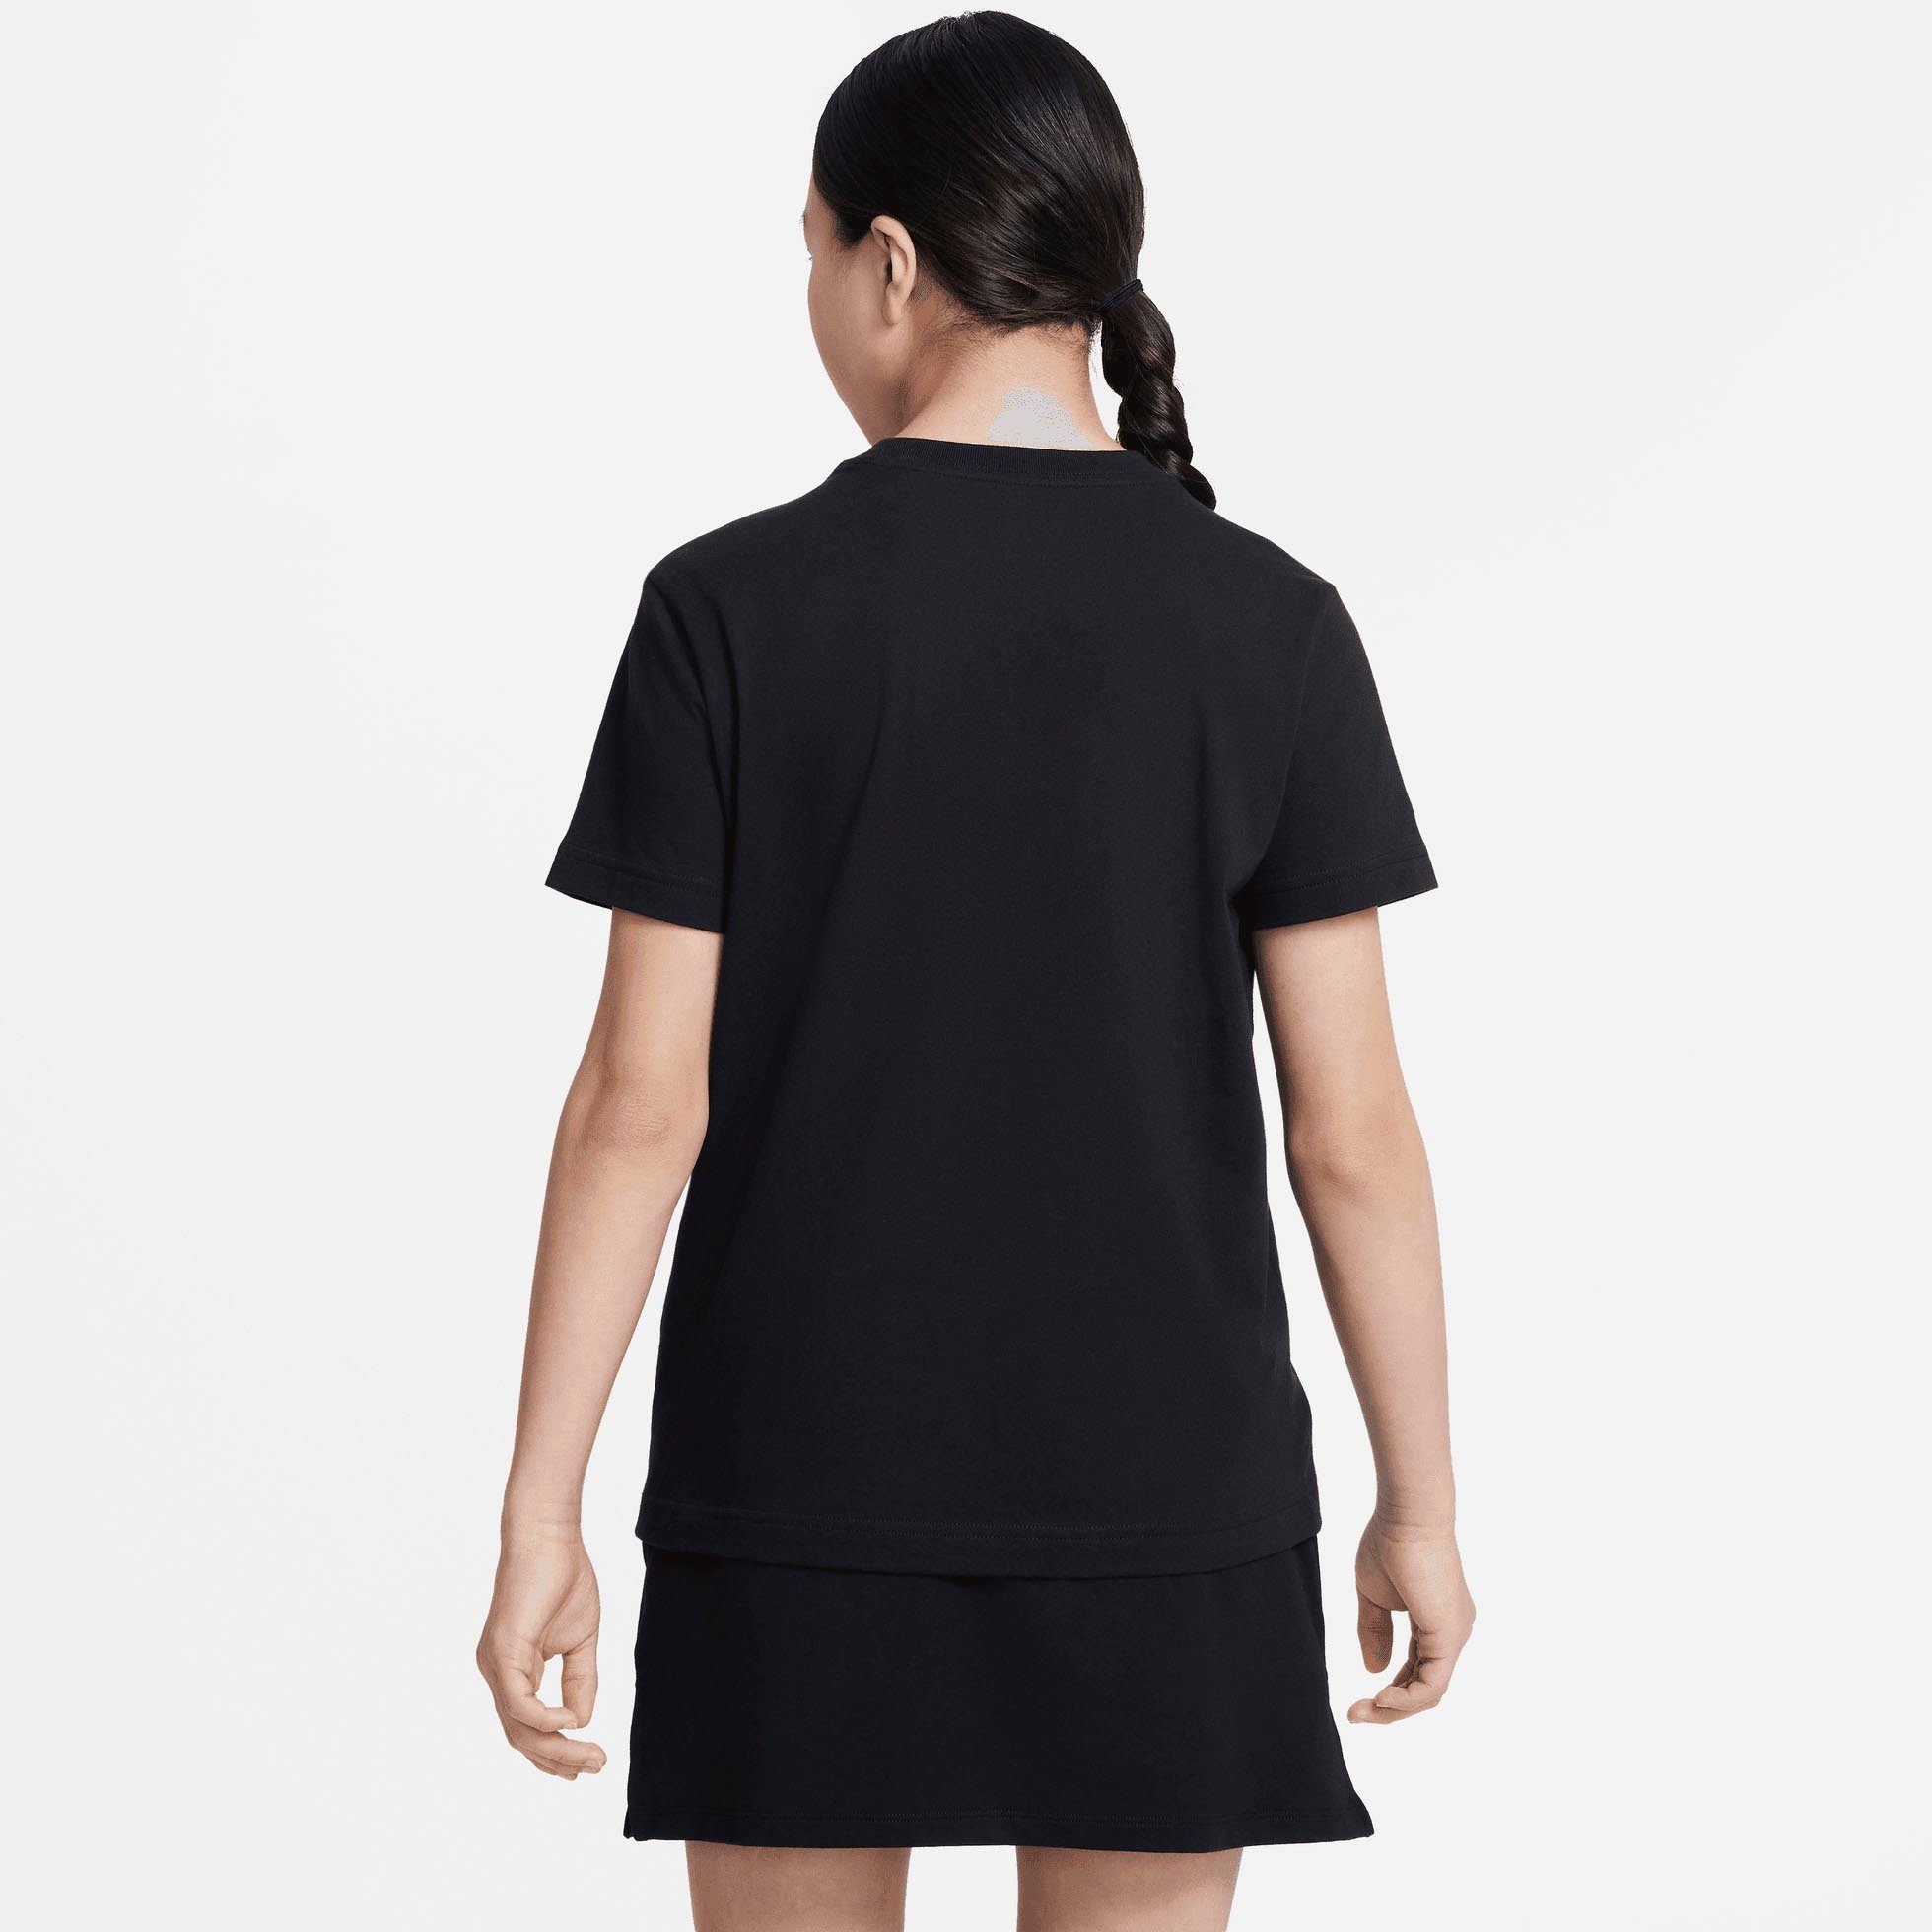 T-Shirt schwarz Sportswear T-SHIRT KIDS' (GIRLS) Nike BIG